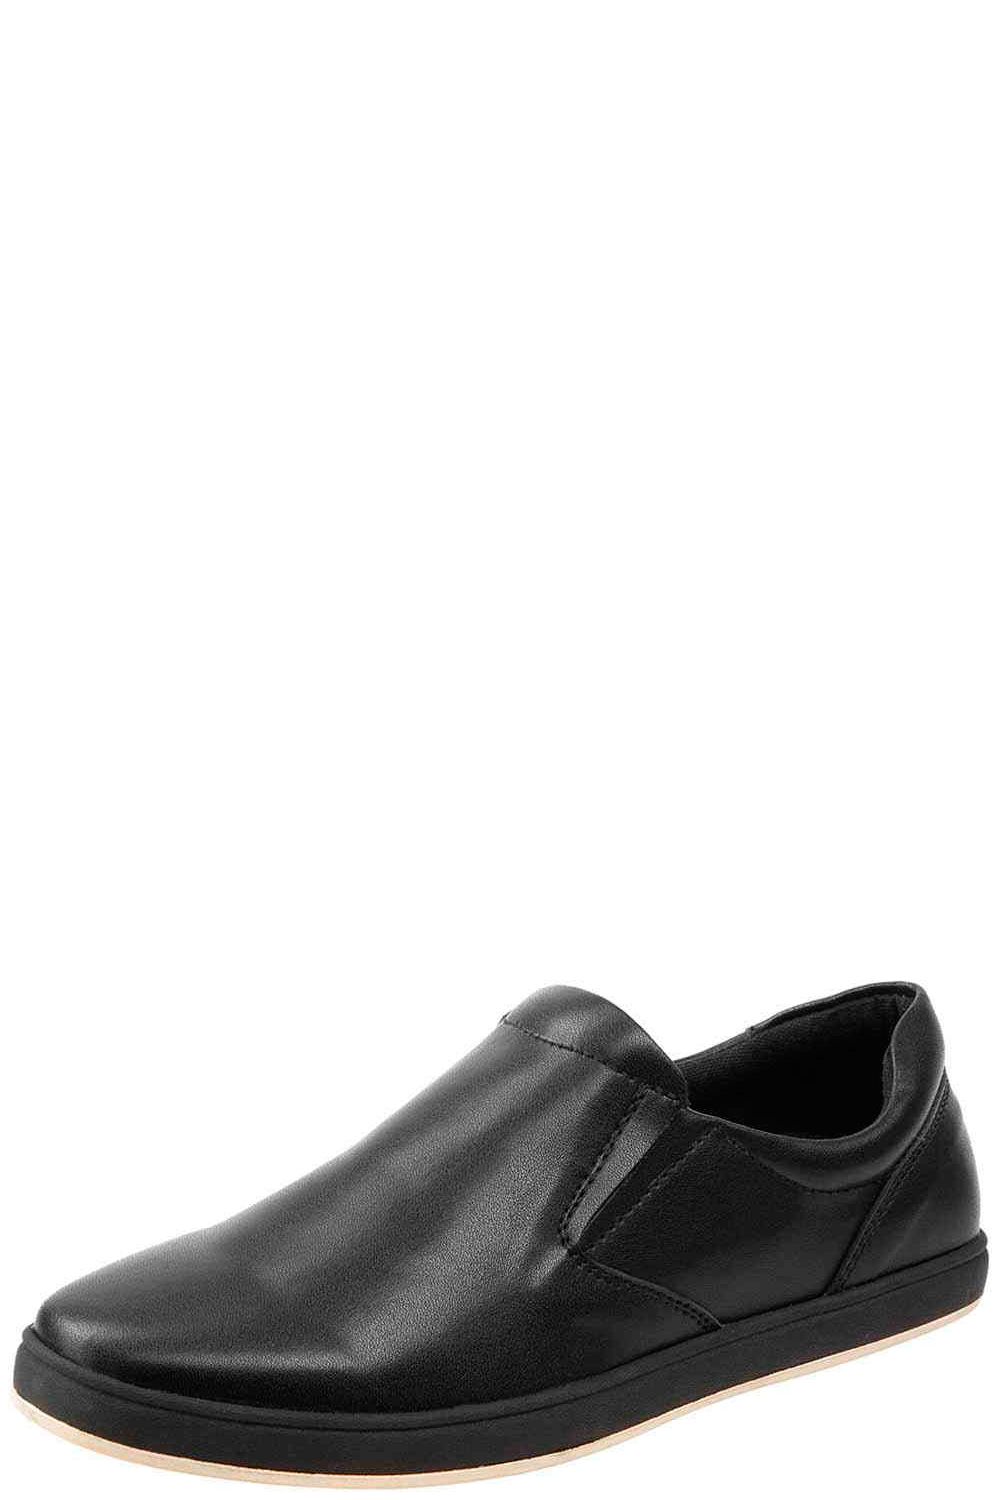 Полуботинки Keddo, размер 35, цвет черный 178609/07-01 - фото 1